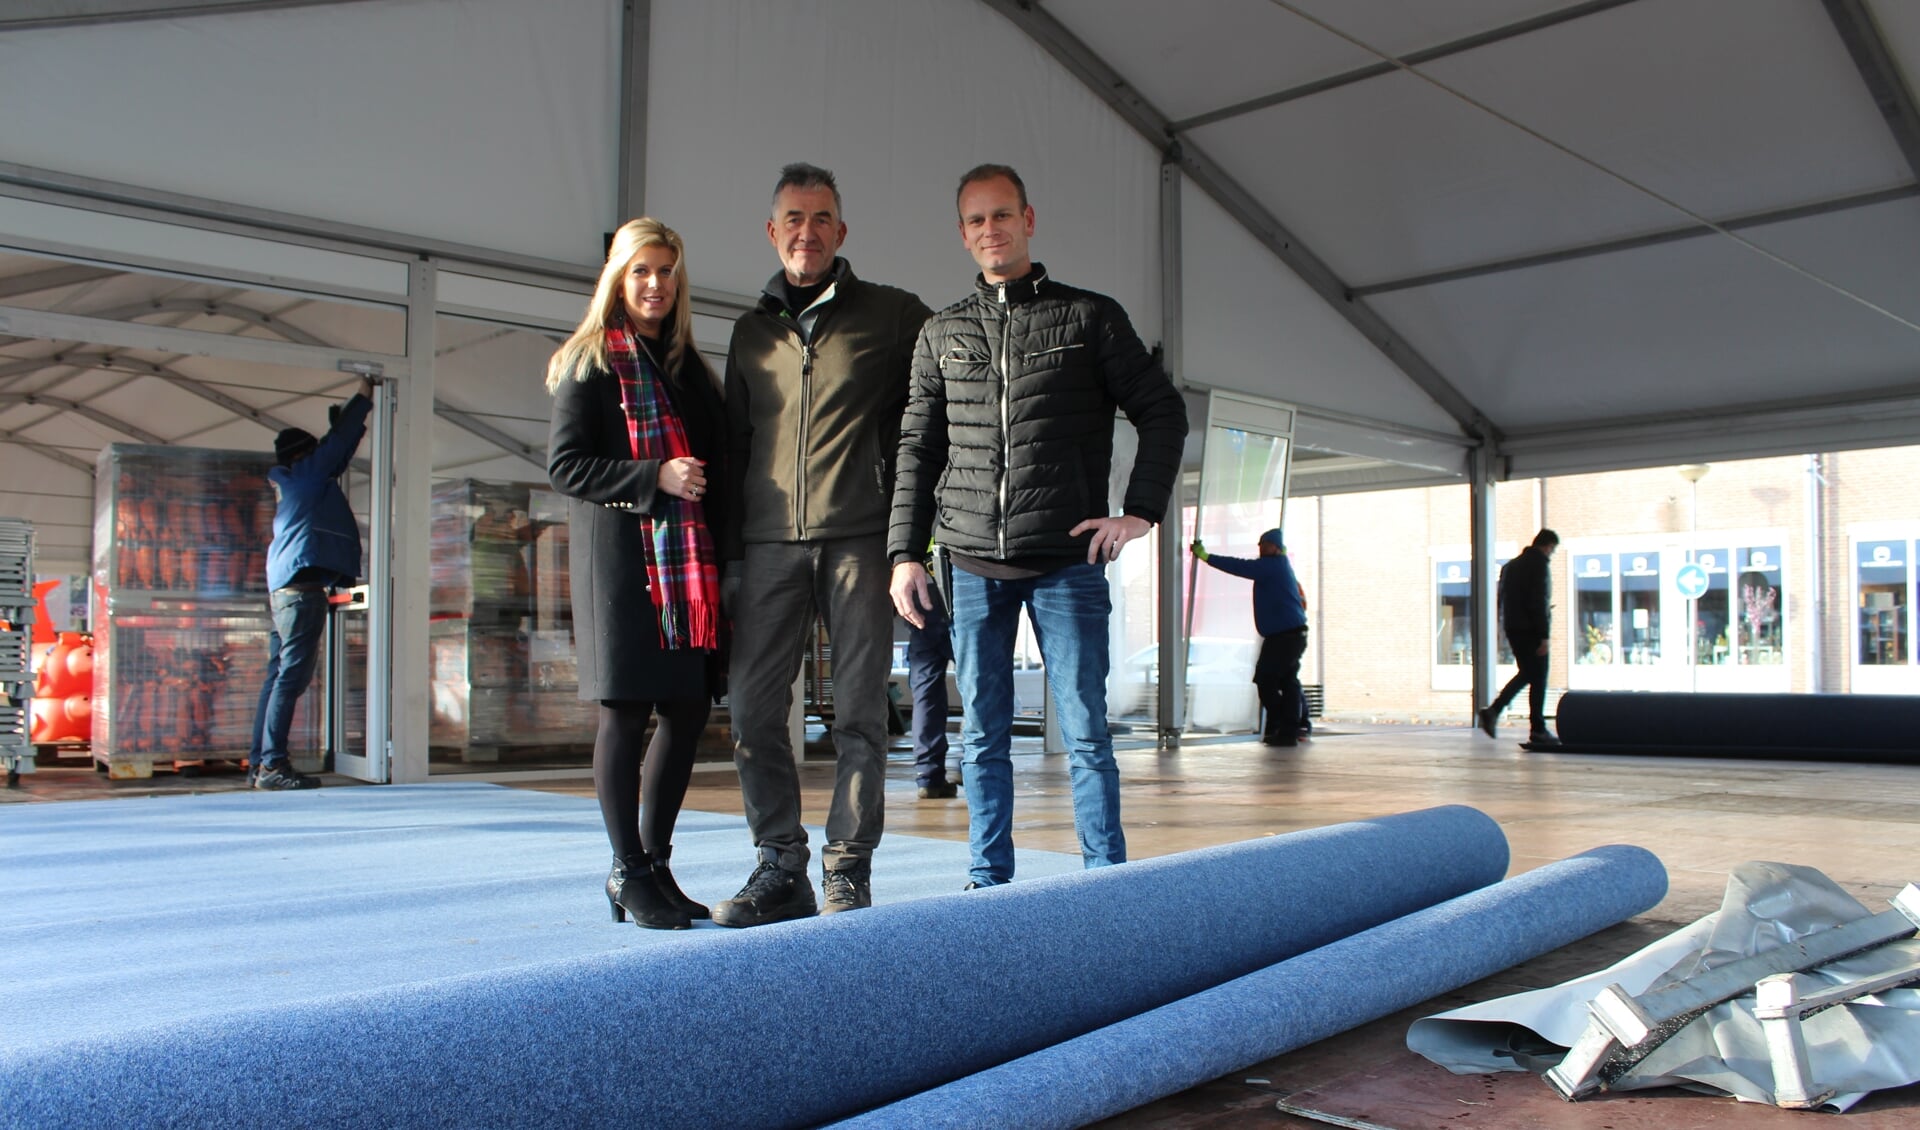 Een grote rol tapijt wordt gesponsord door AS Complete Woningstoffeerder uit Steenbergen.